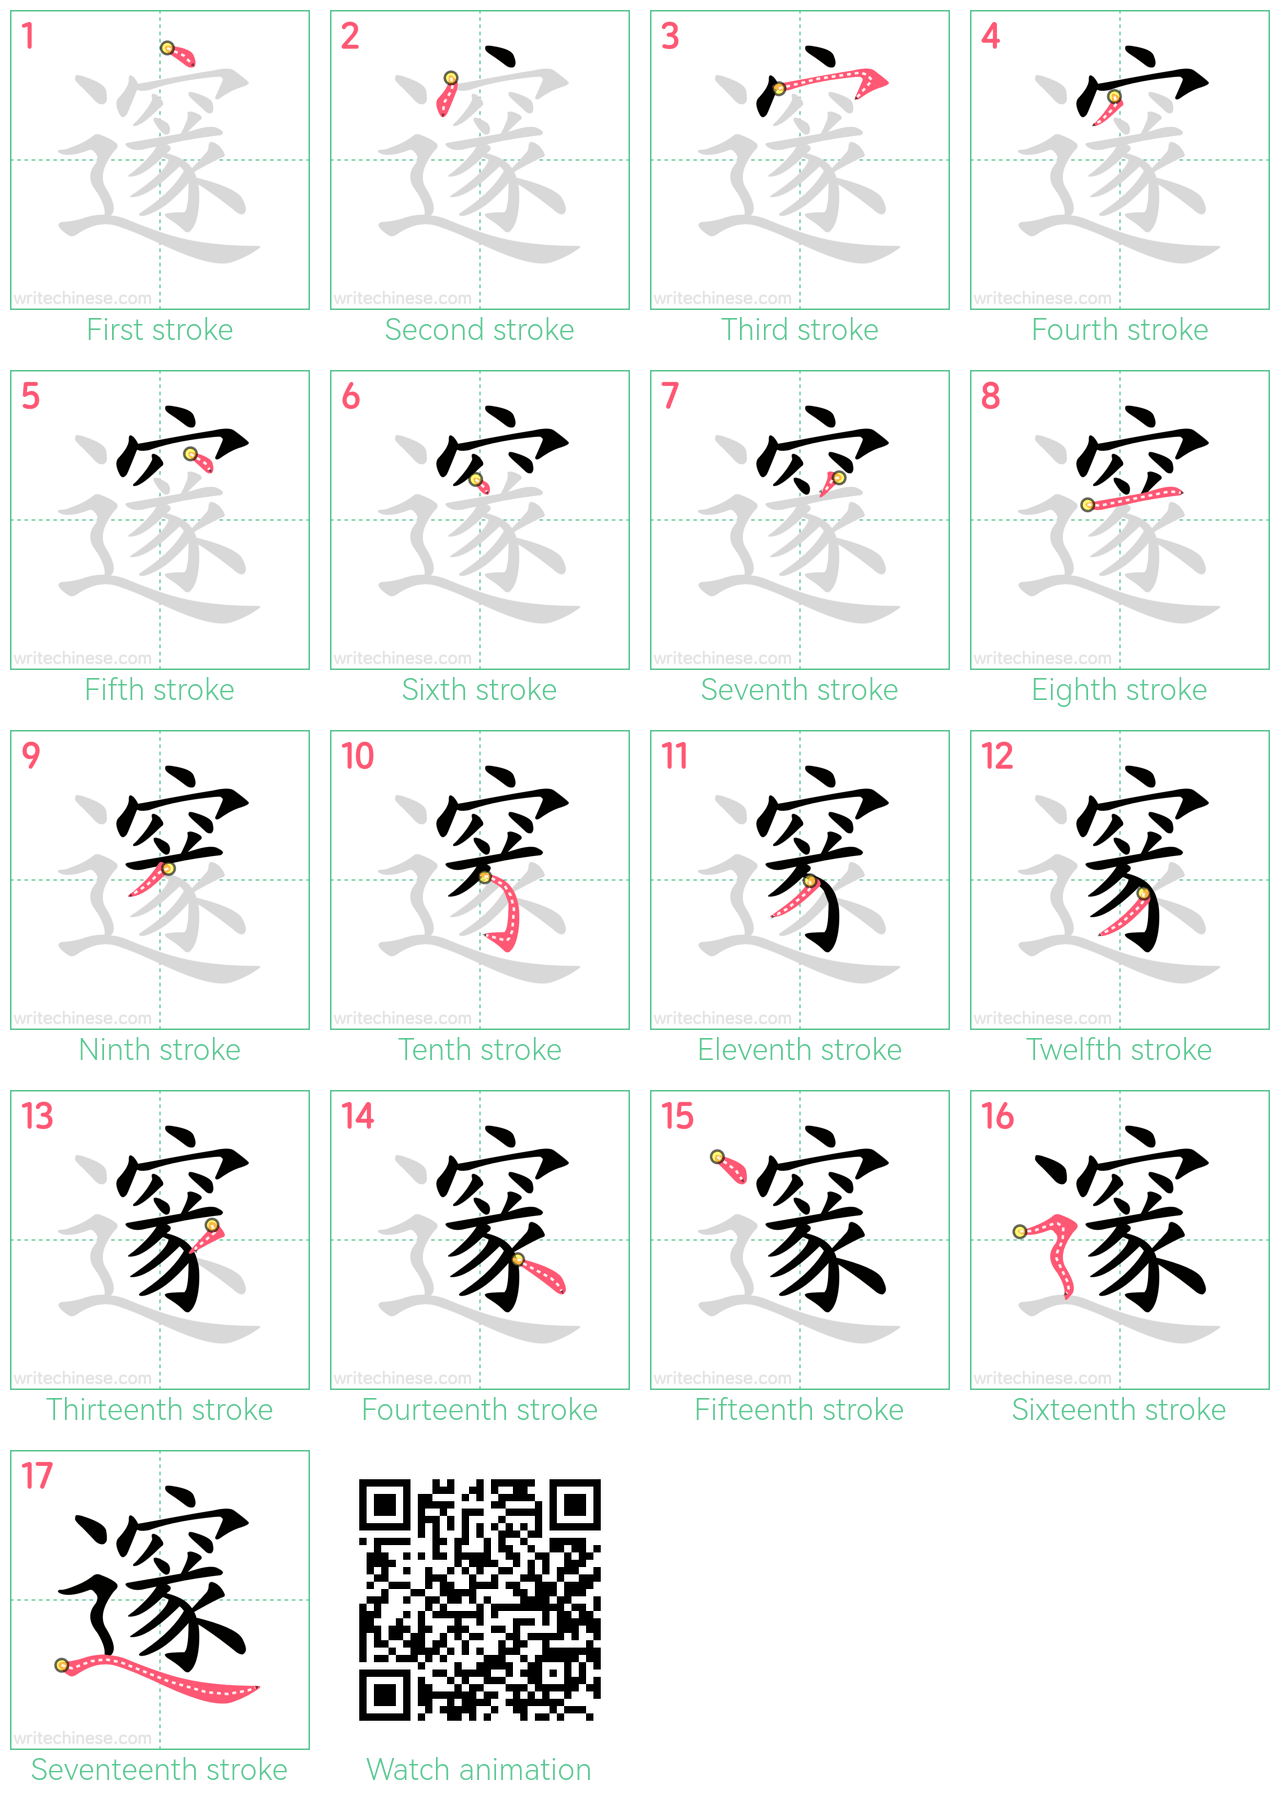 邃 step-by-step stroke order diagrams